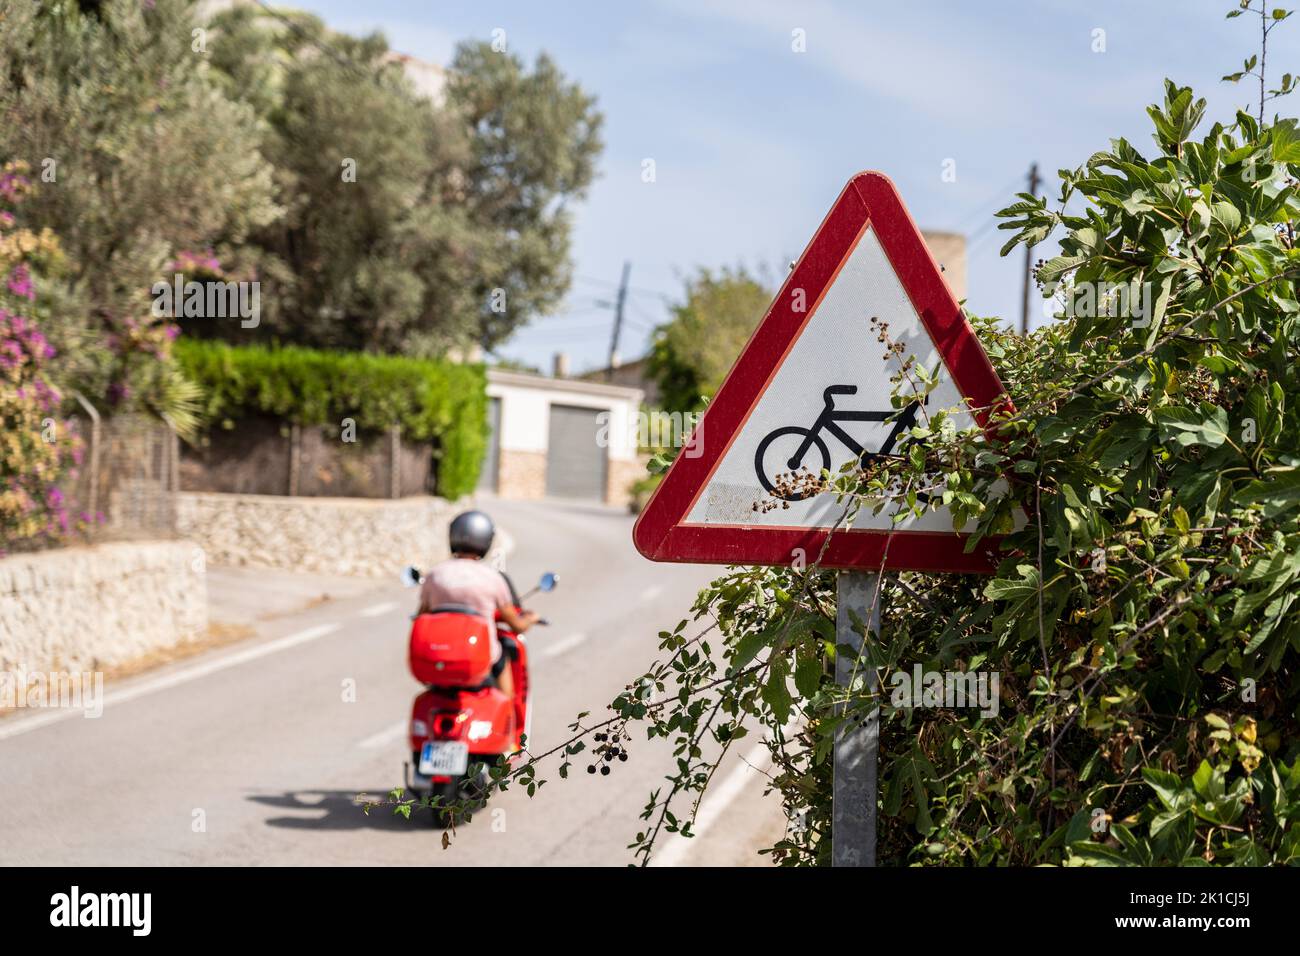 Señal de alerta de tráfico para la presencia de ciclistas P-22, Randa, Mallorca, Islas Baleares, España Foto de stock